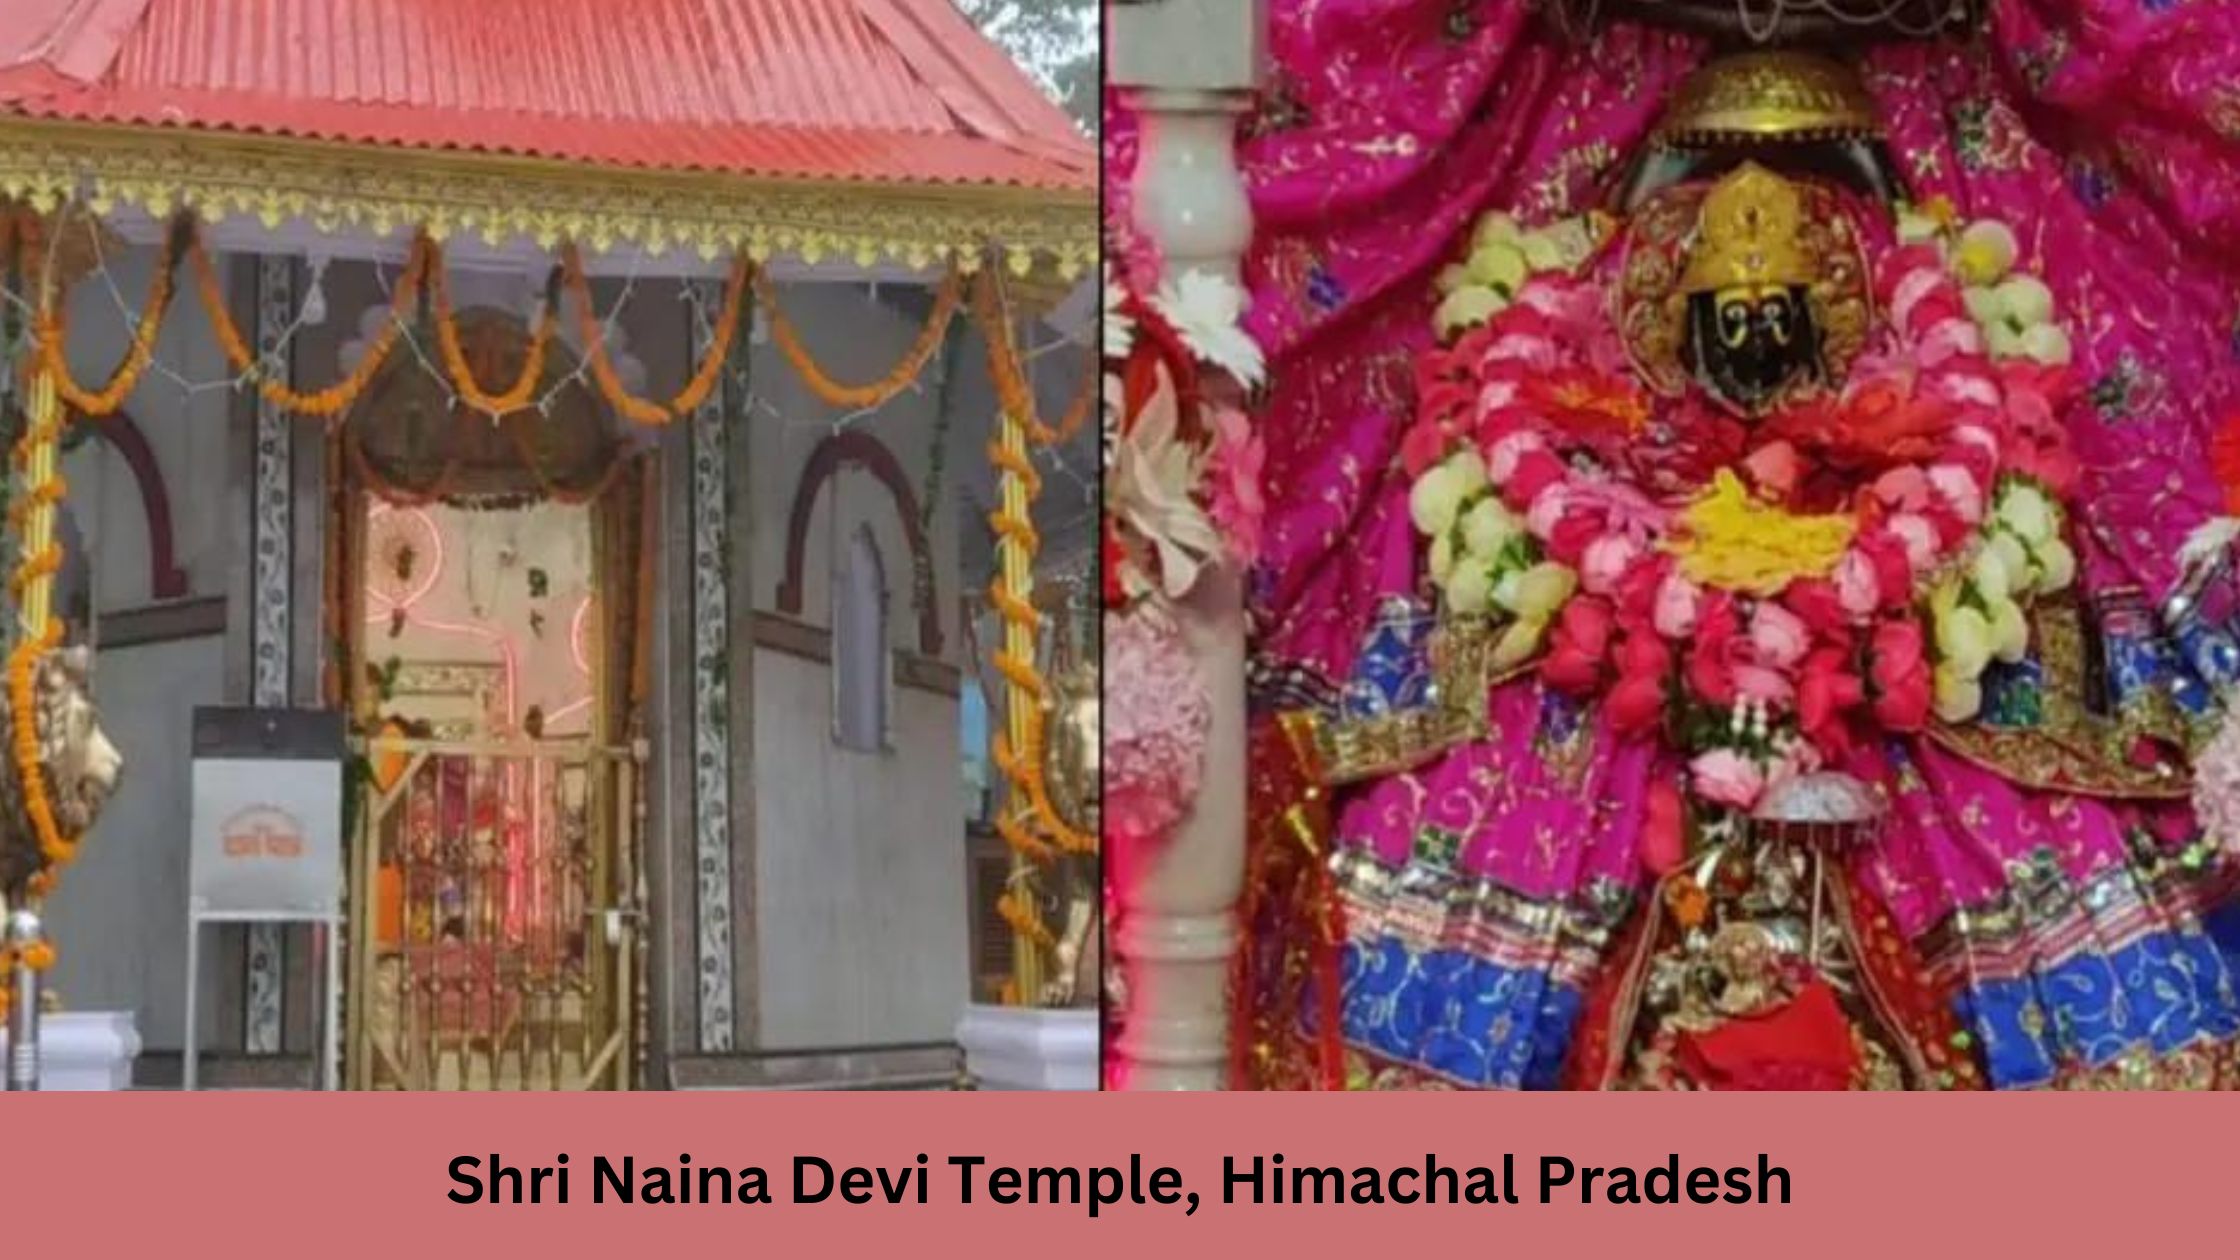 Shri Naina Devi Temple, Himachal Pradesh